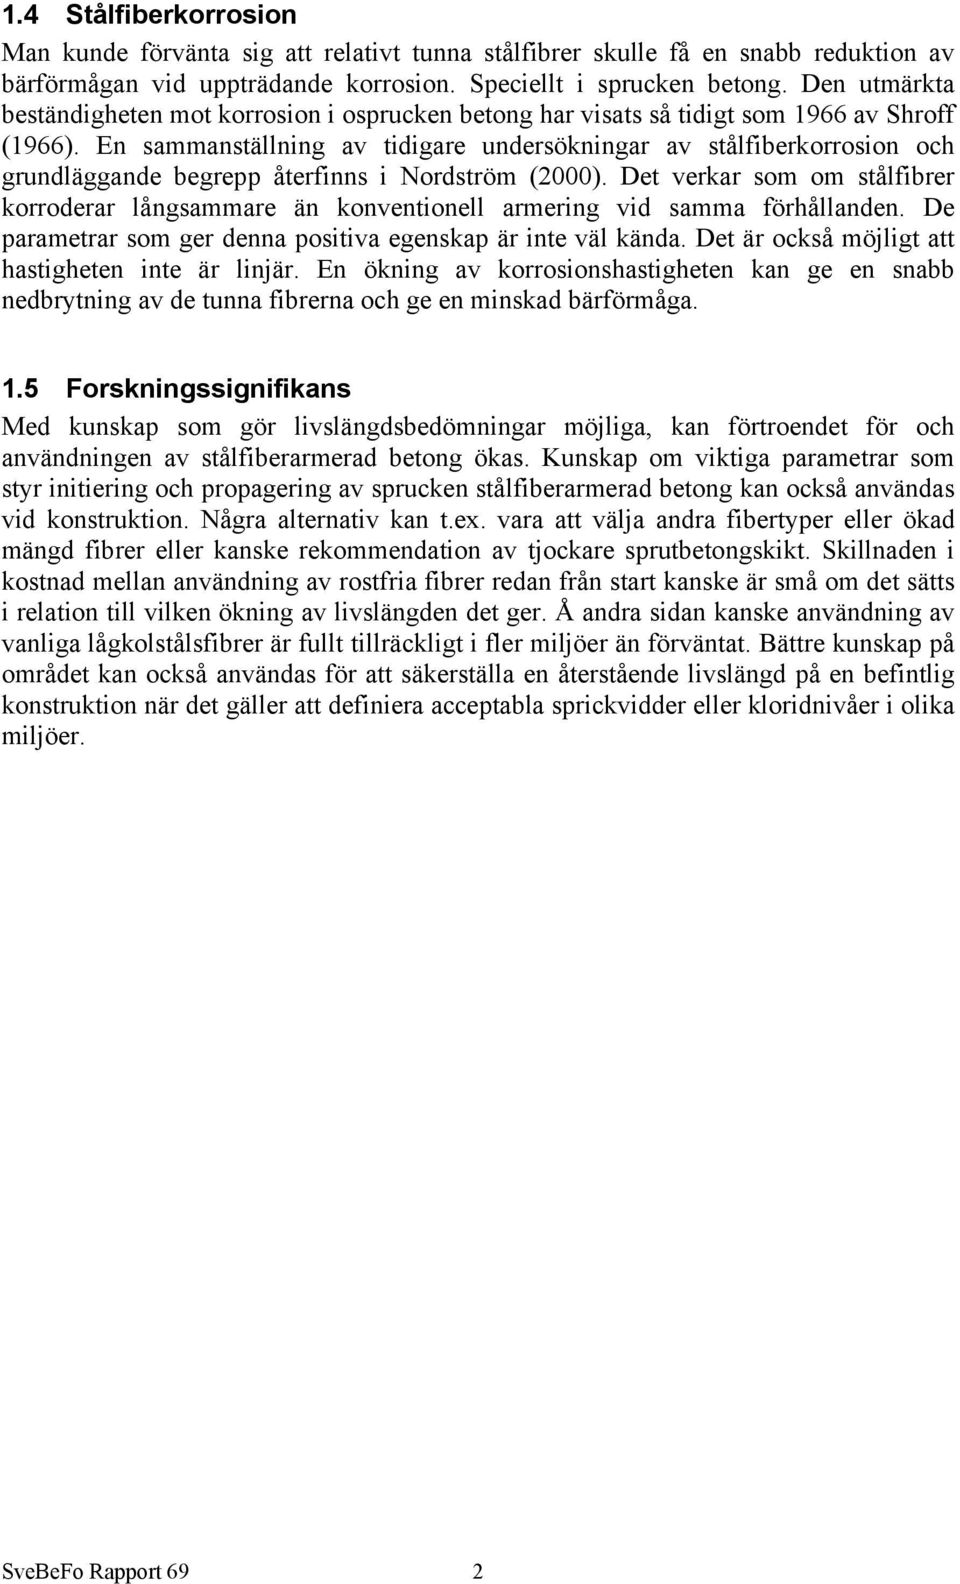 En sammanställning av tidigare undersökningar av stålfiberkorrosion och grundläggande begrepp återfinns i Nordström (2).